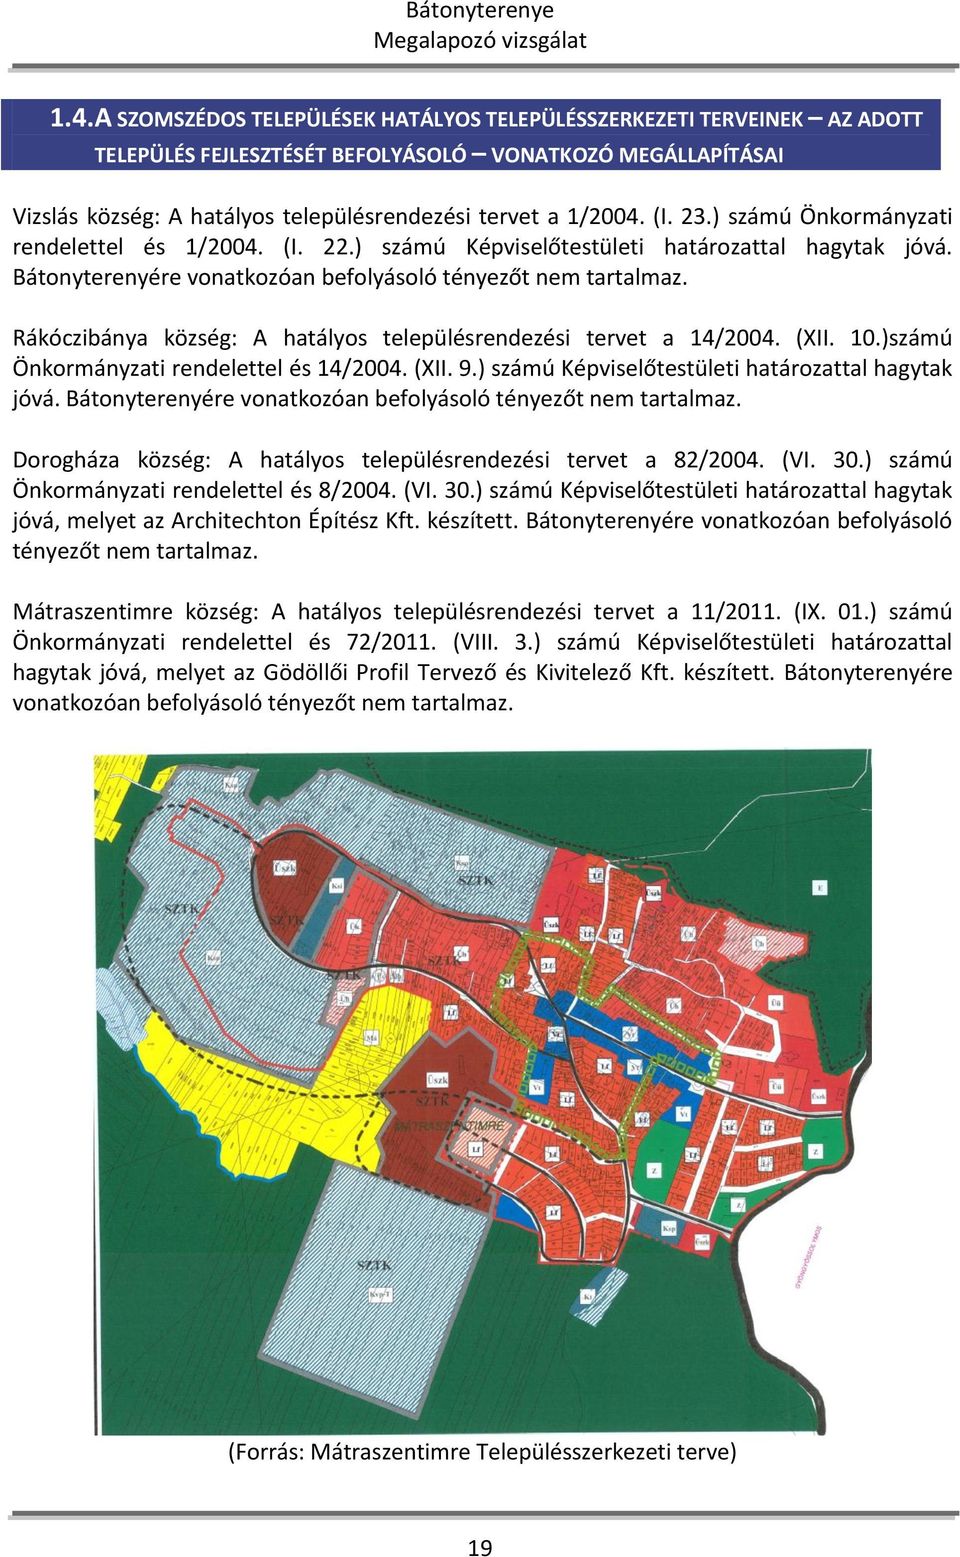 Rákóczibánya község: A hatályos településrendezési tervet a 14/2004. (XII. 10.)számú Önkormányzati rendelettel és 14/2004. (XII. 9.) számú Képviselőtestületi határozattal hagytak jóvá.